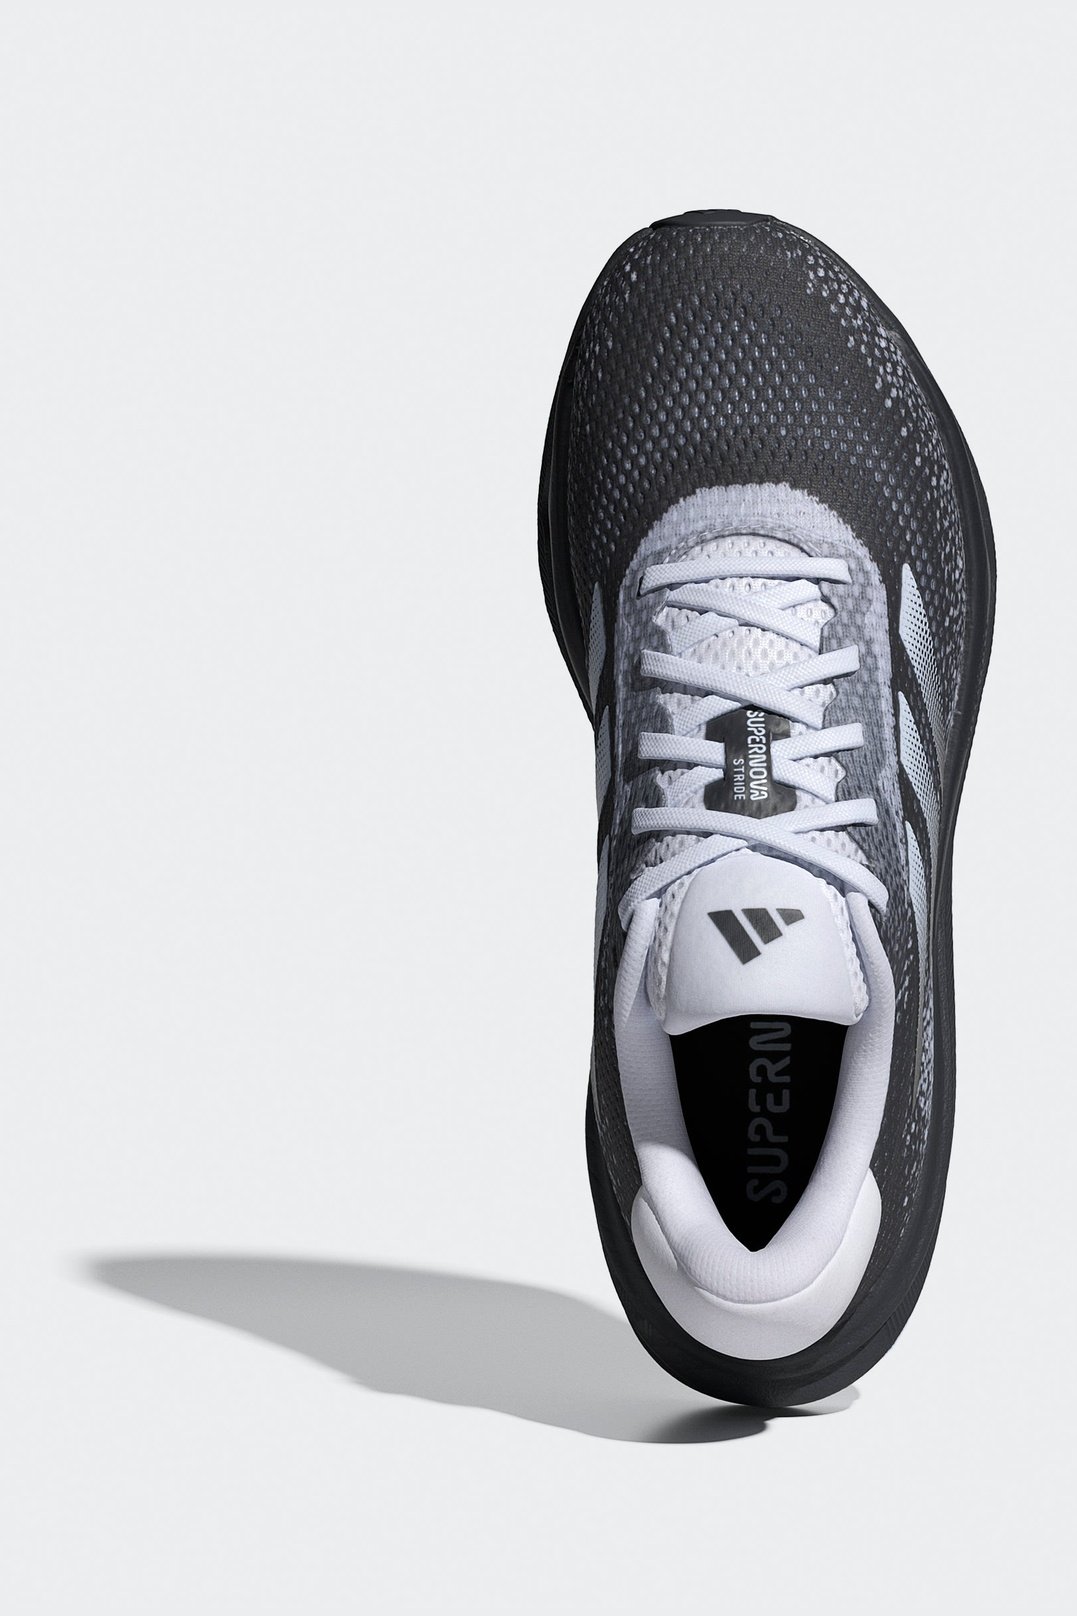 נעלי ספורט לנשים SUPERNOVA STRIDE בצבע לבן ושחור